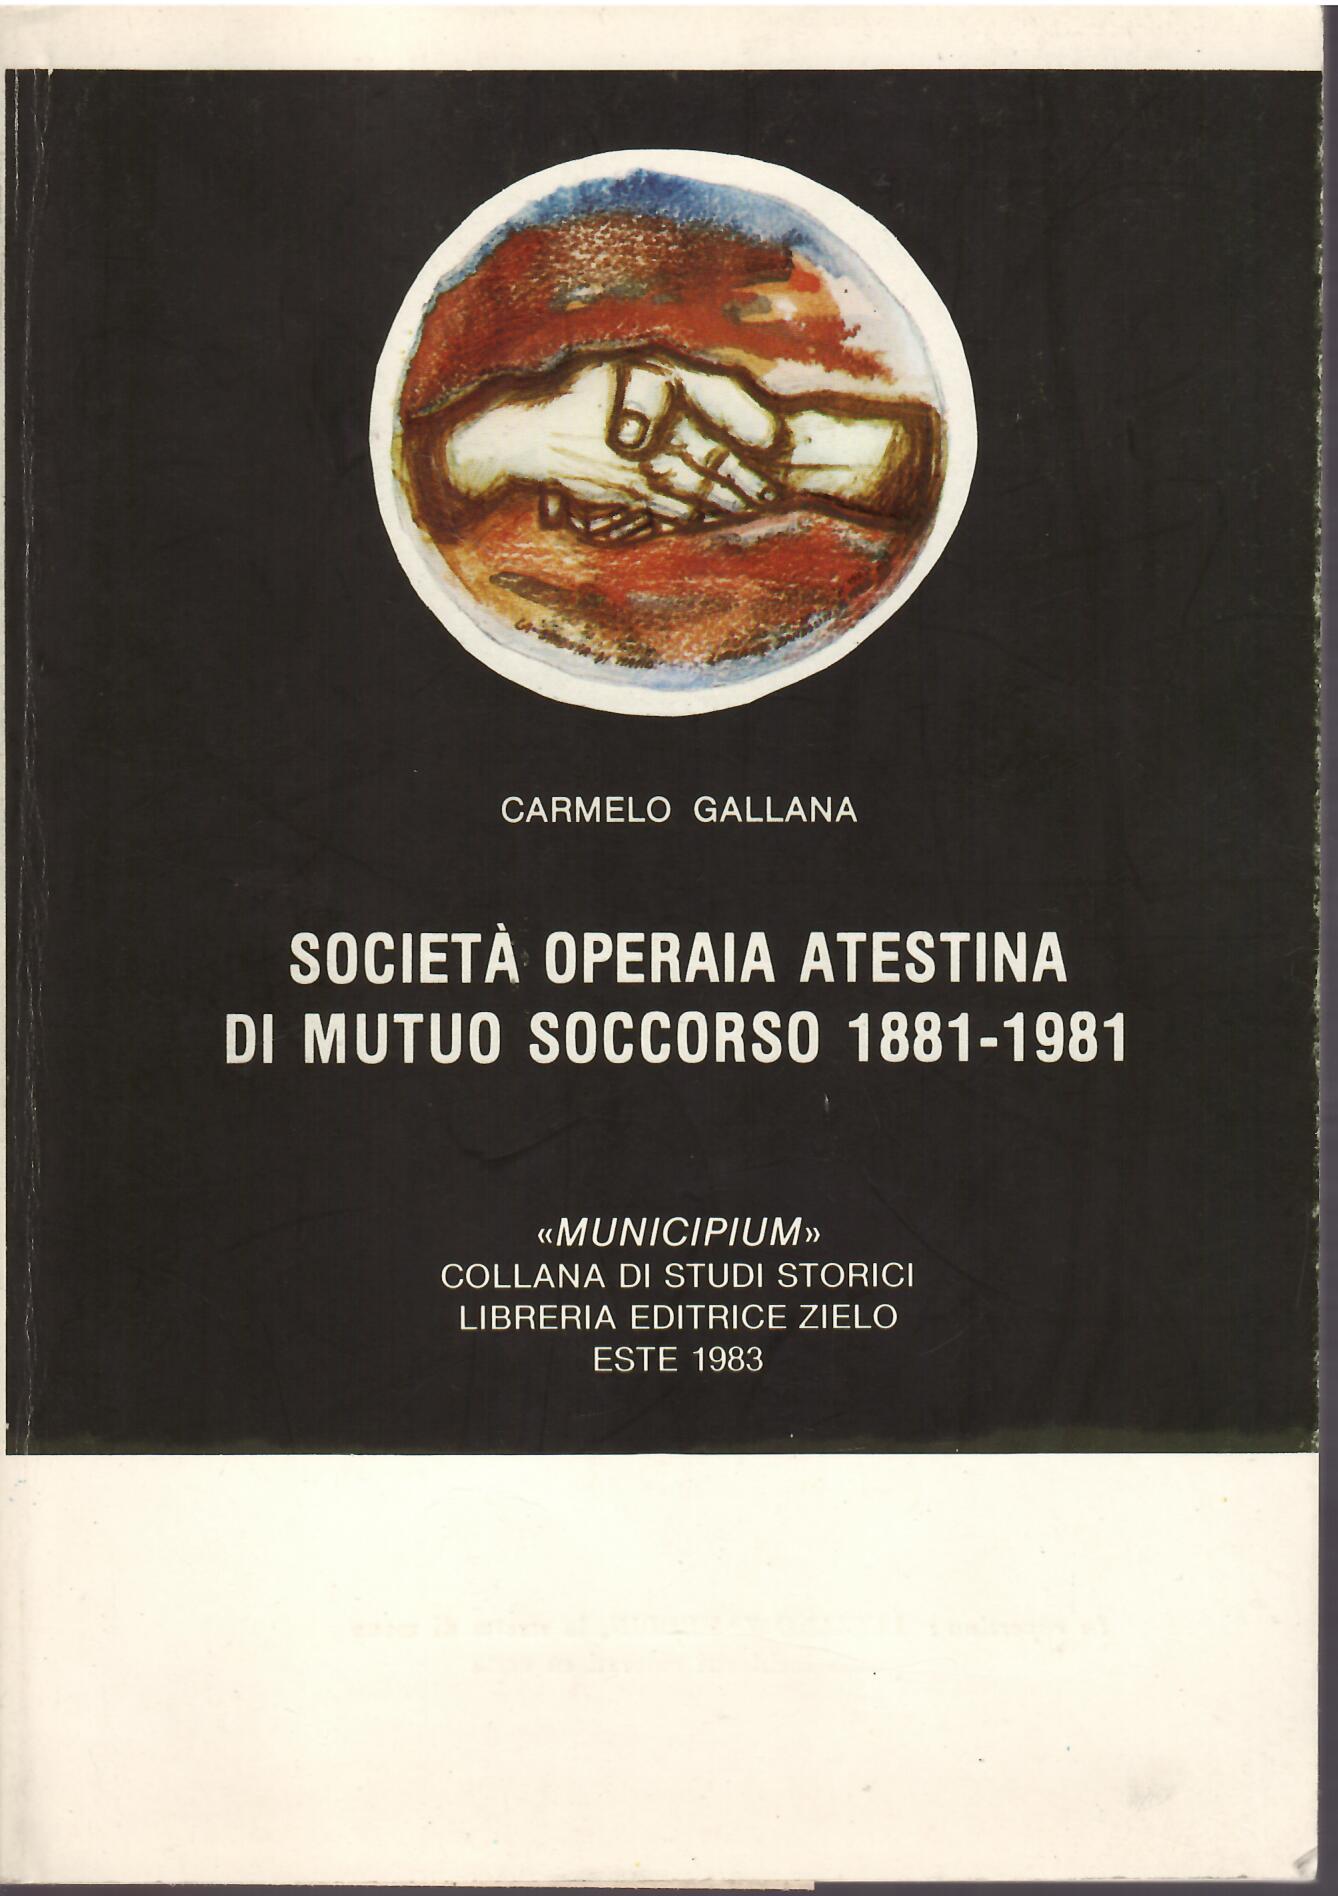 SOCIETA' OPERAIAATESTINA DI MUTUO SOCCORSO 1881 - 1981